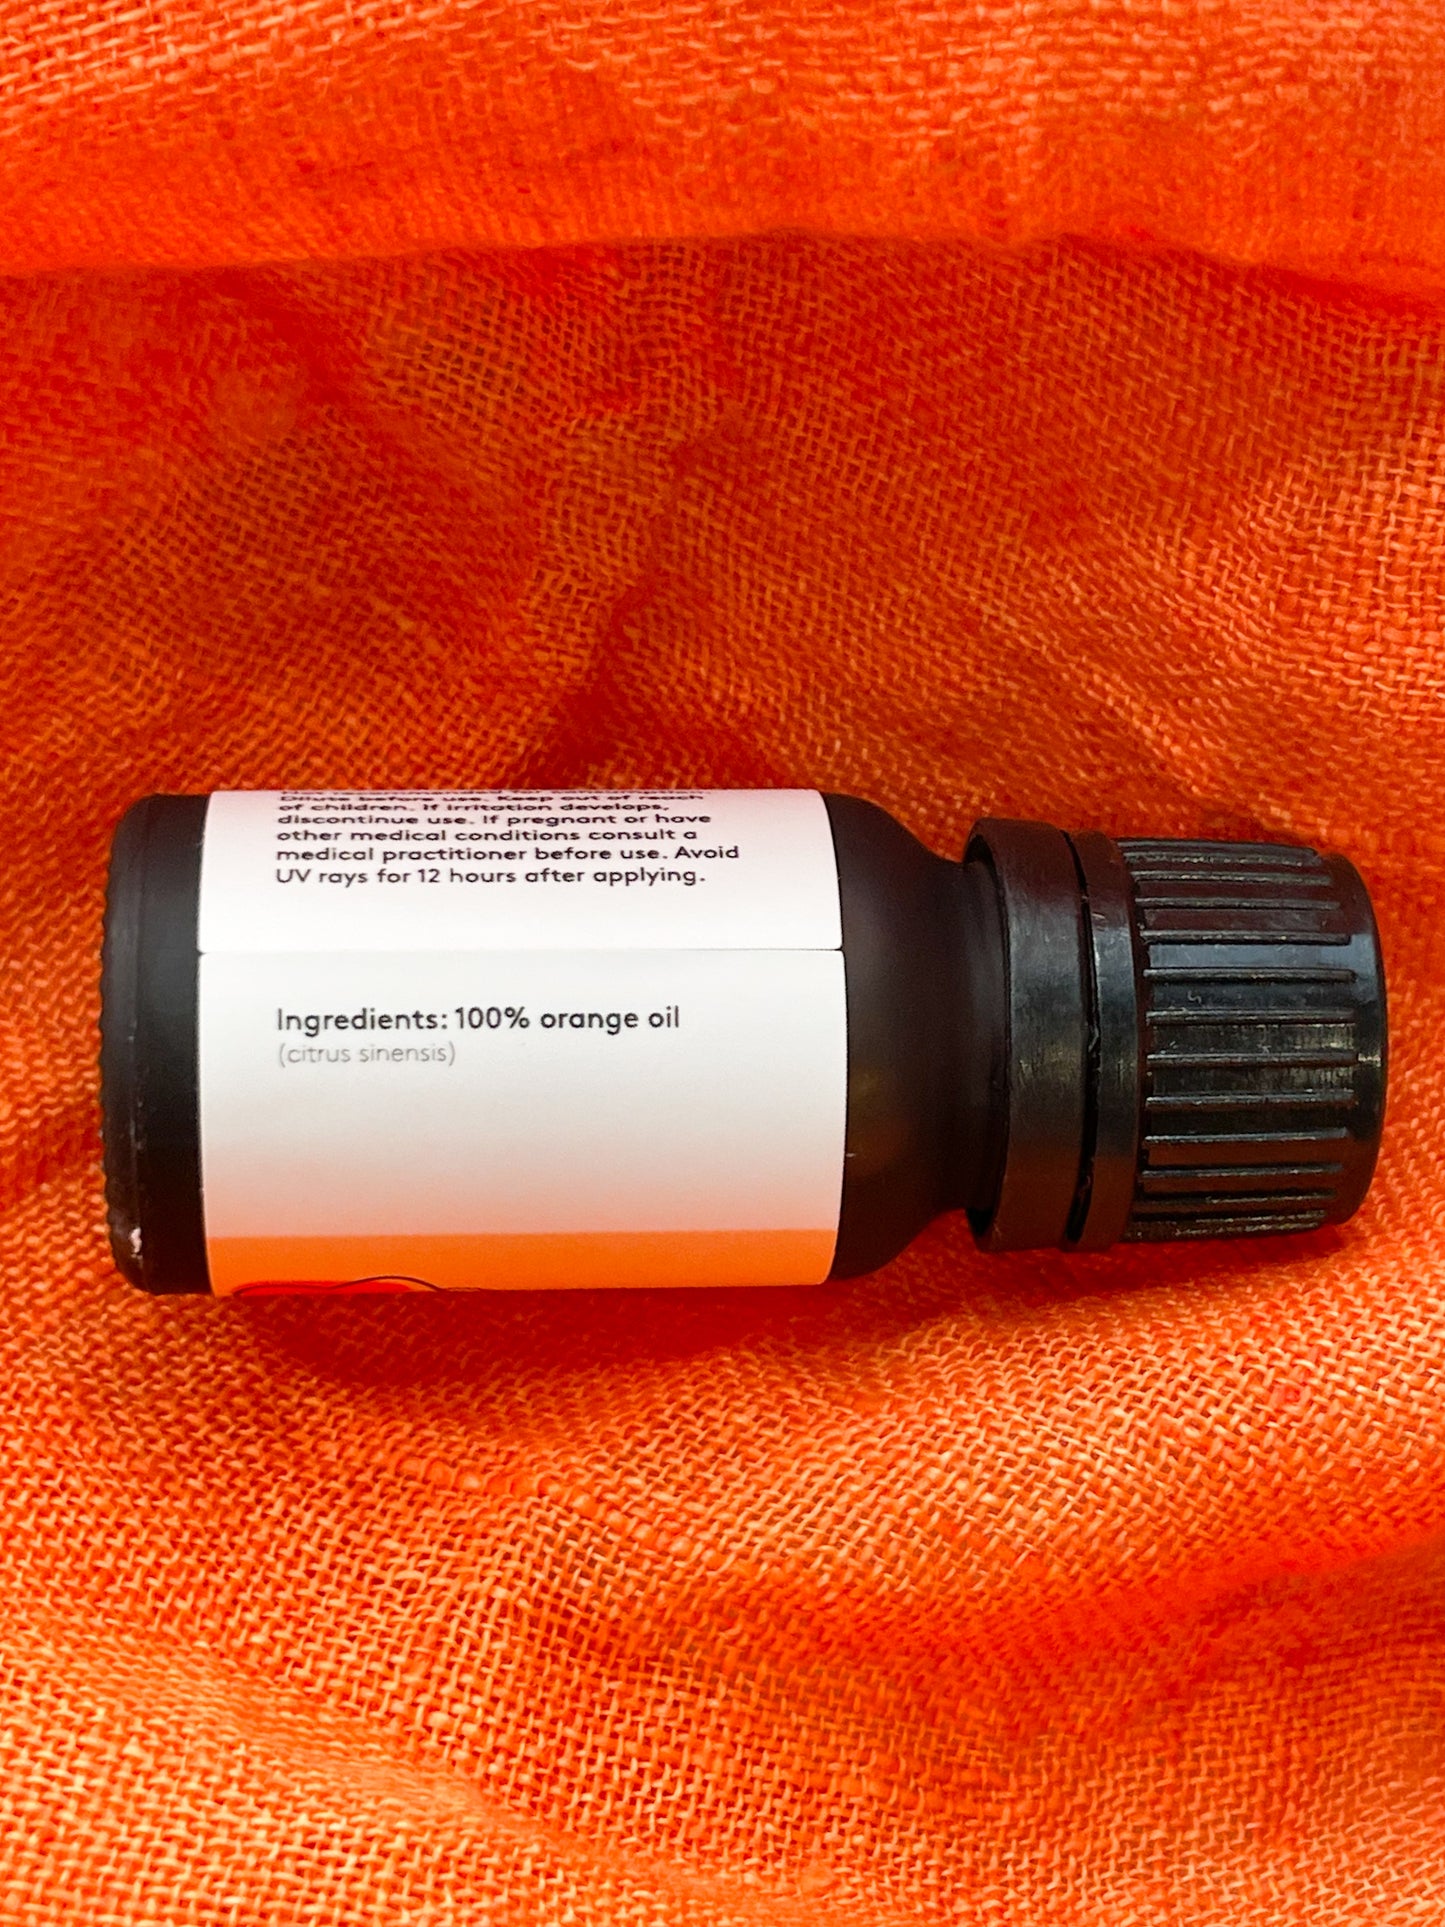 Orange Essential Oil - 10ml